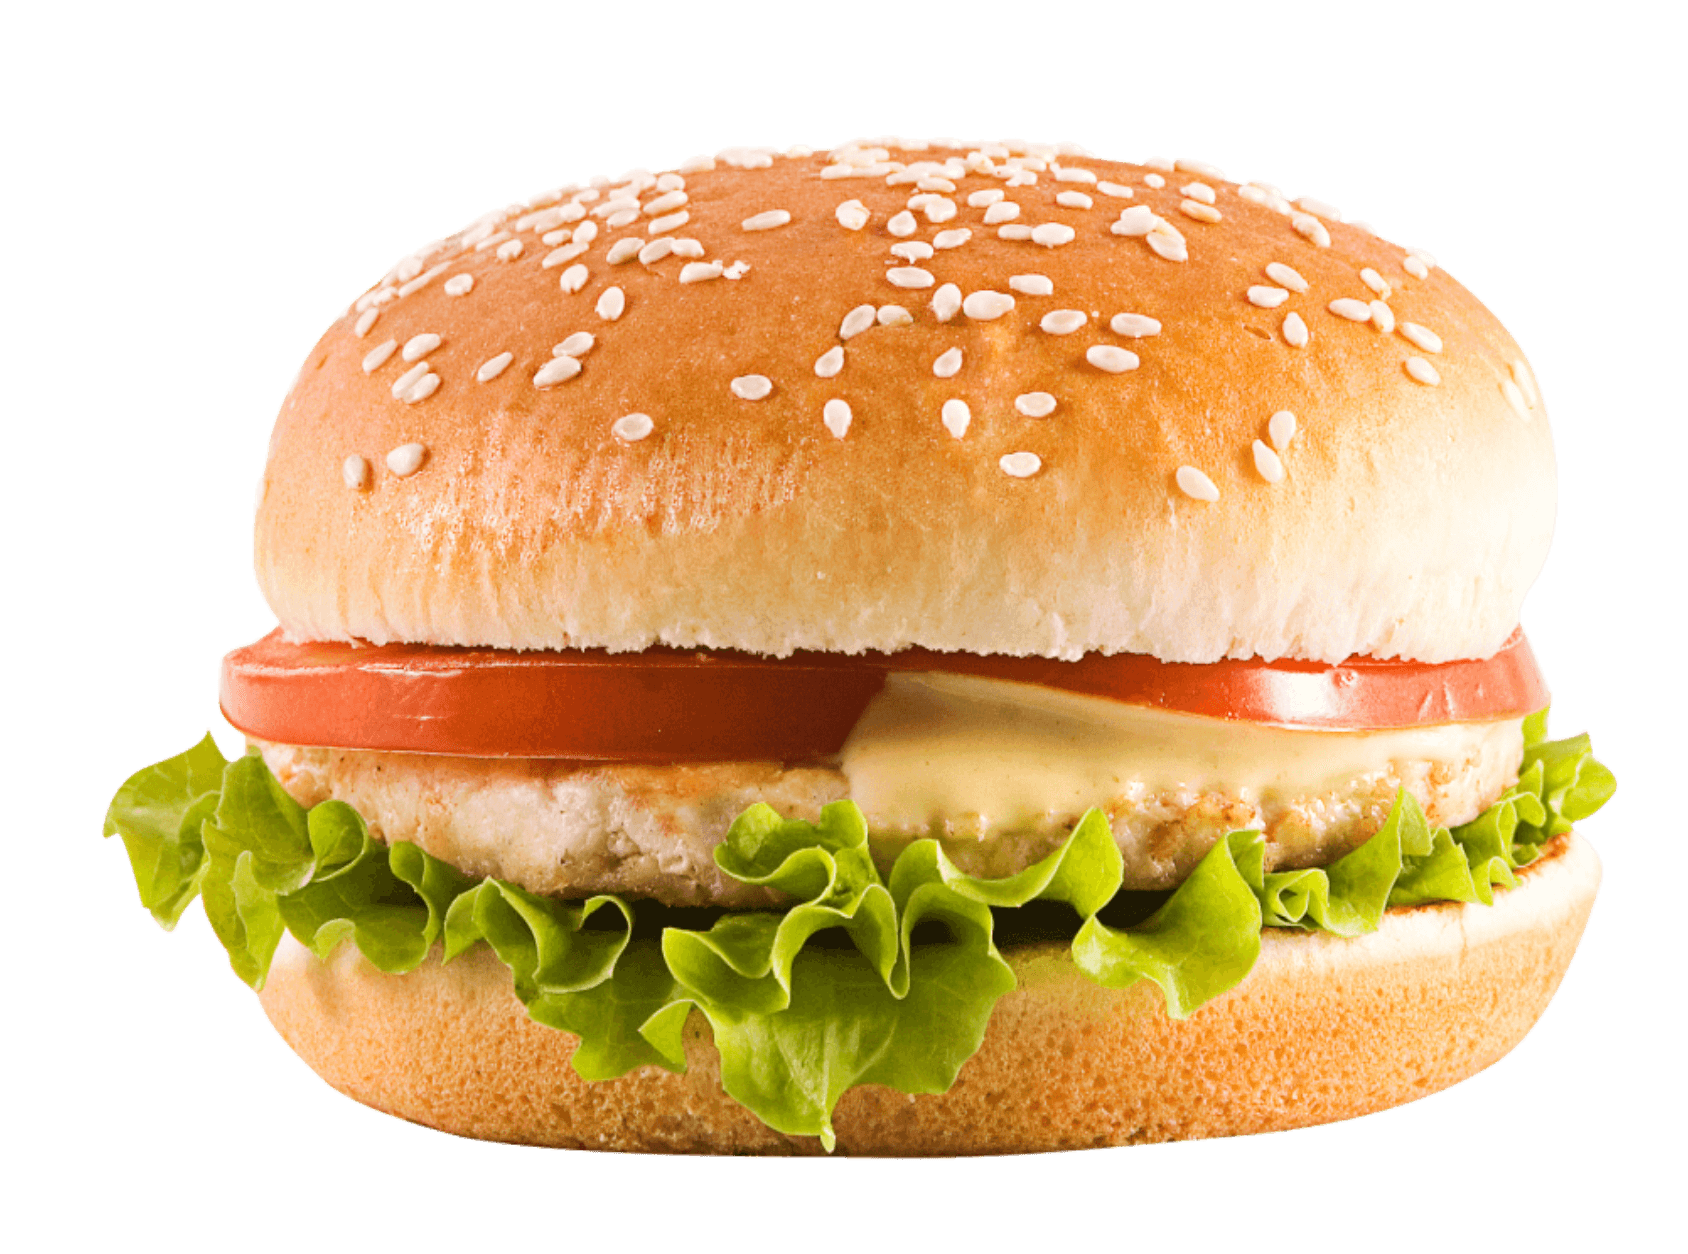 Hamburger Burger Png Image Png Image - Burger, Transparent background PNG HD thumbnail